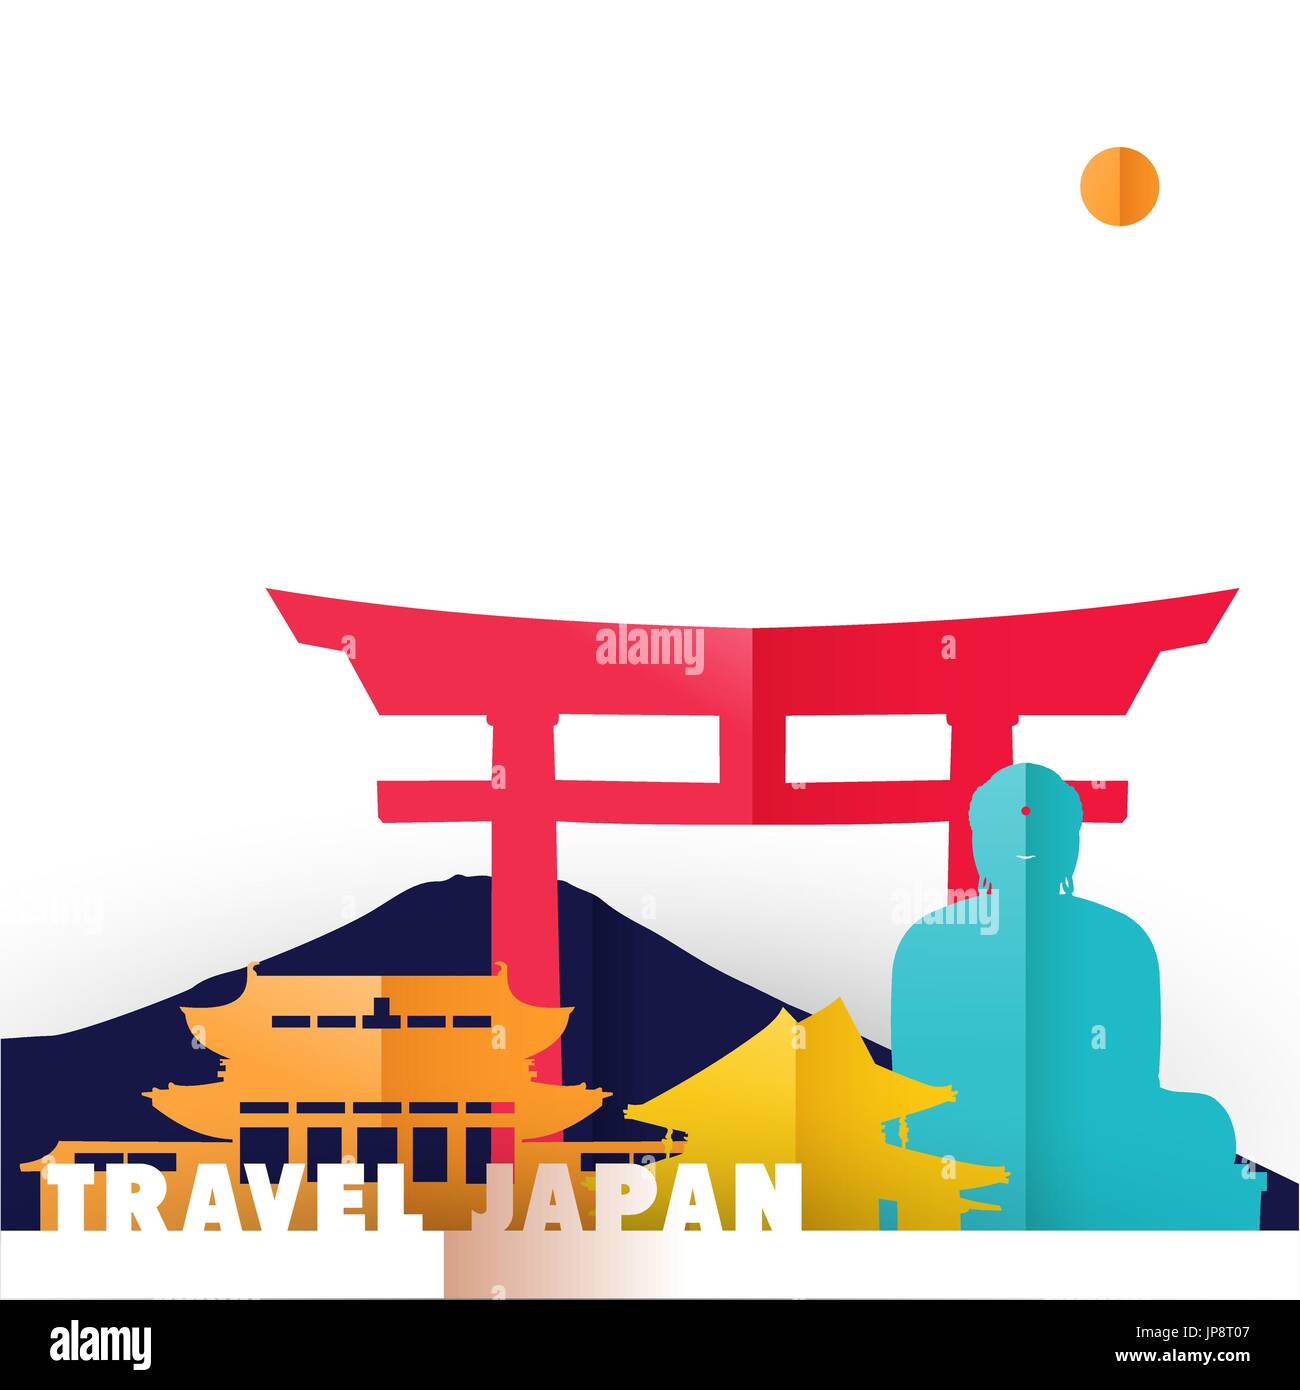 Il viaggio in Giappone concetto illustrazione in carta tagliata stile, famosi punti di riferimento mondiale del paese giapponese. Include la statua del Buddha, il Monte Fuji, antichi templi. Illustrazione Vettoriale